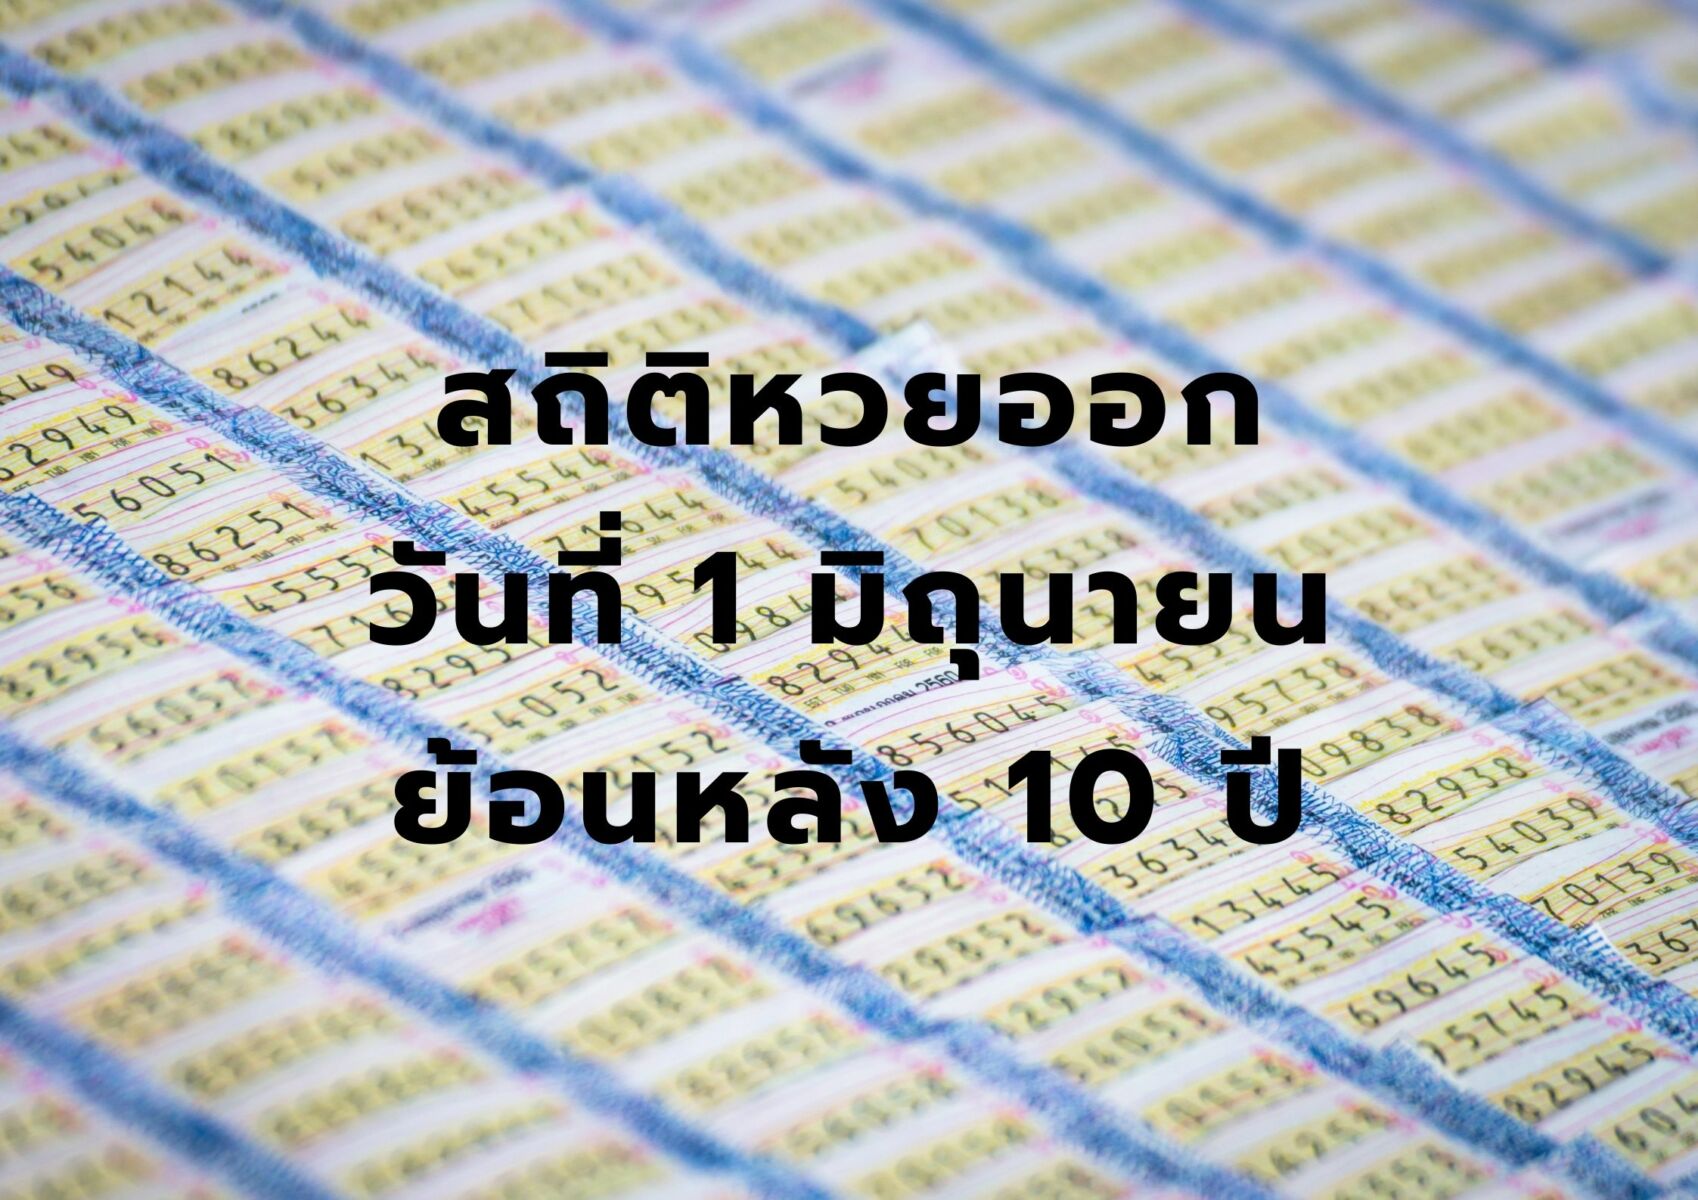 สถิติหวยออกวันที่ 1 มิถุนายน ย้อนหลัง 10 ปี งวด 1 6 65 นี้มาแน่ | Thaiger  ข่าวไทย